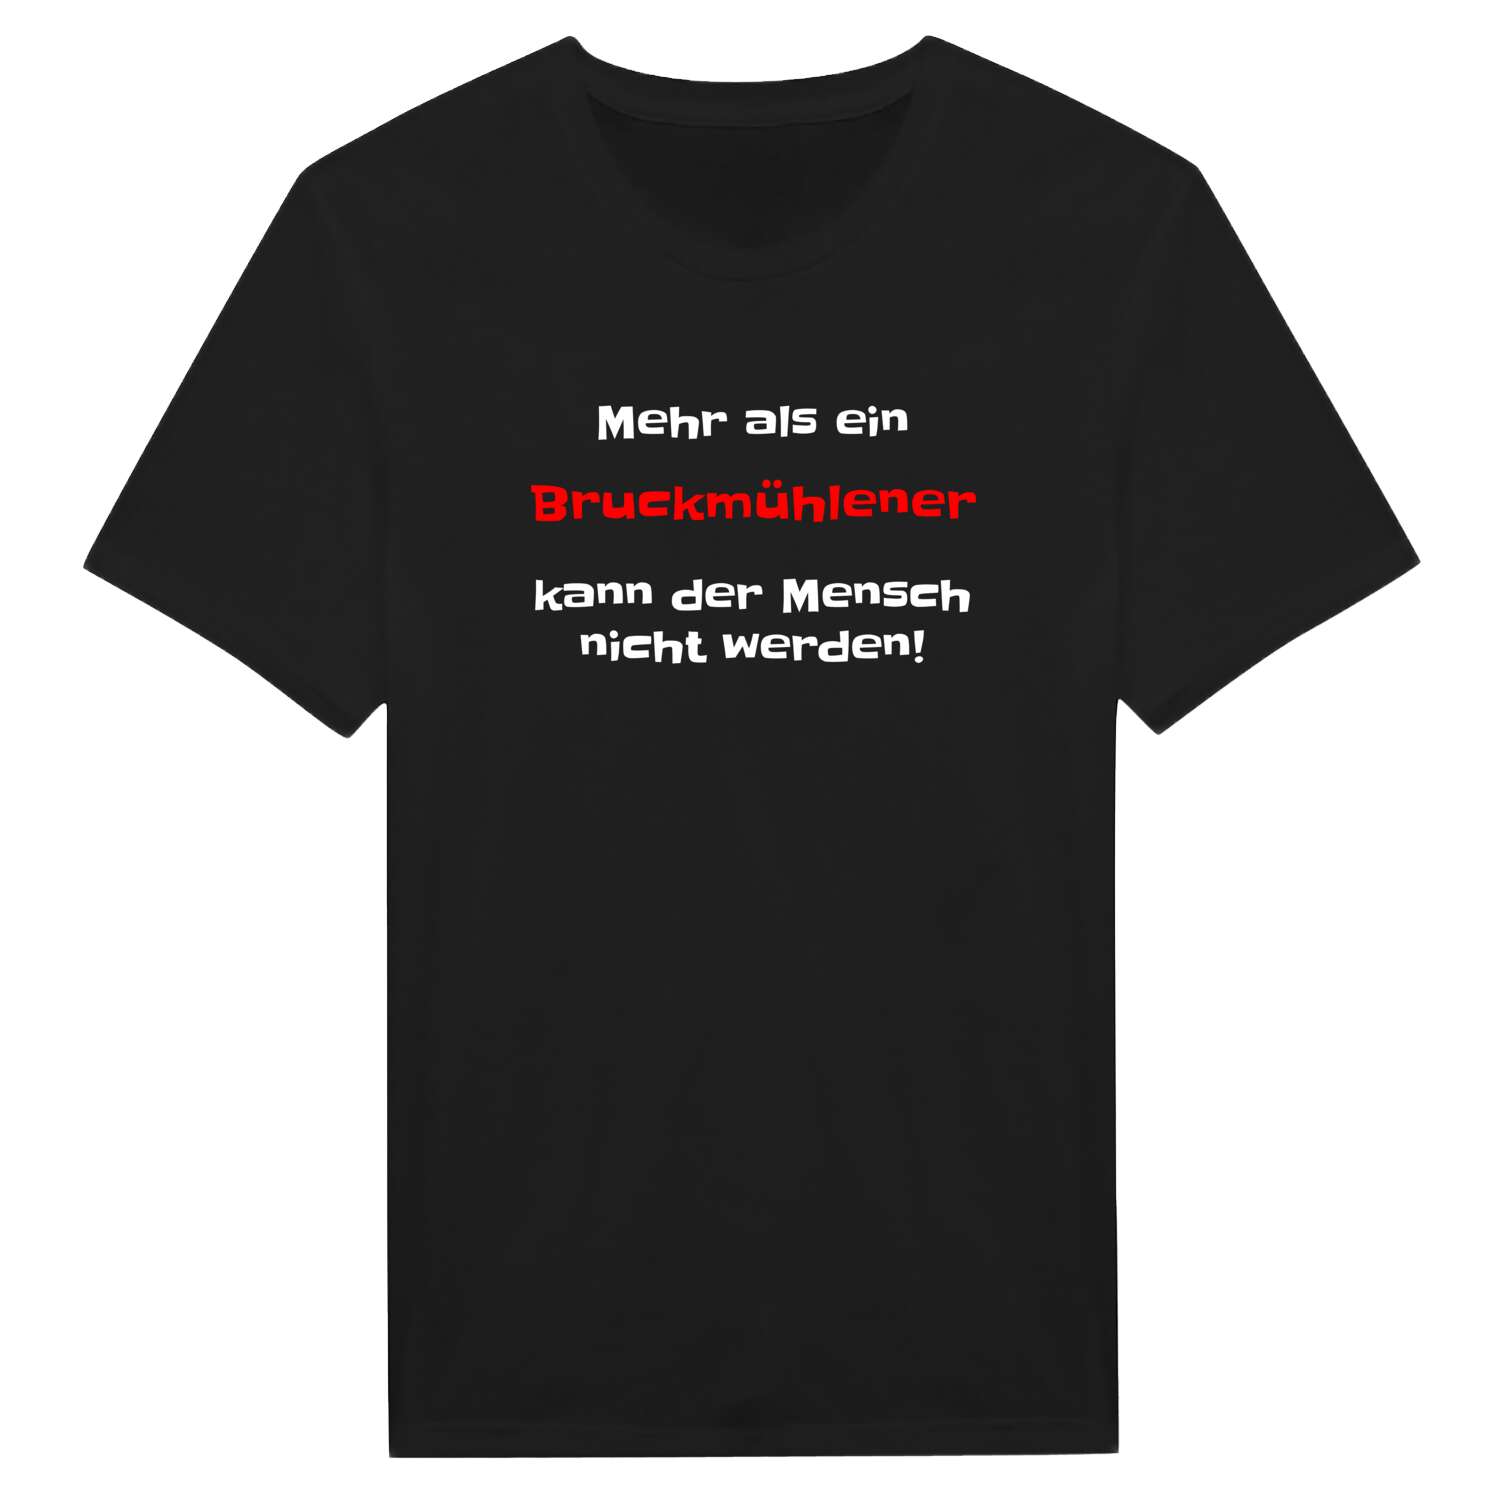 Bruckmühle T-Shirt »Mehr als ein«